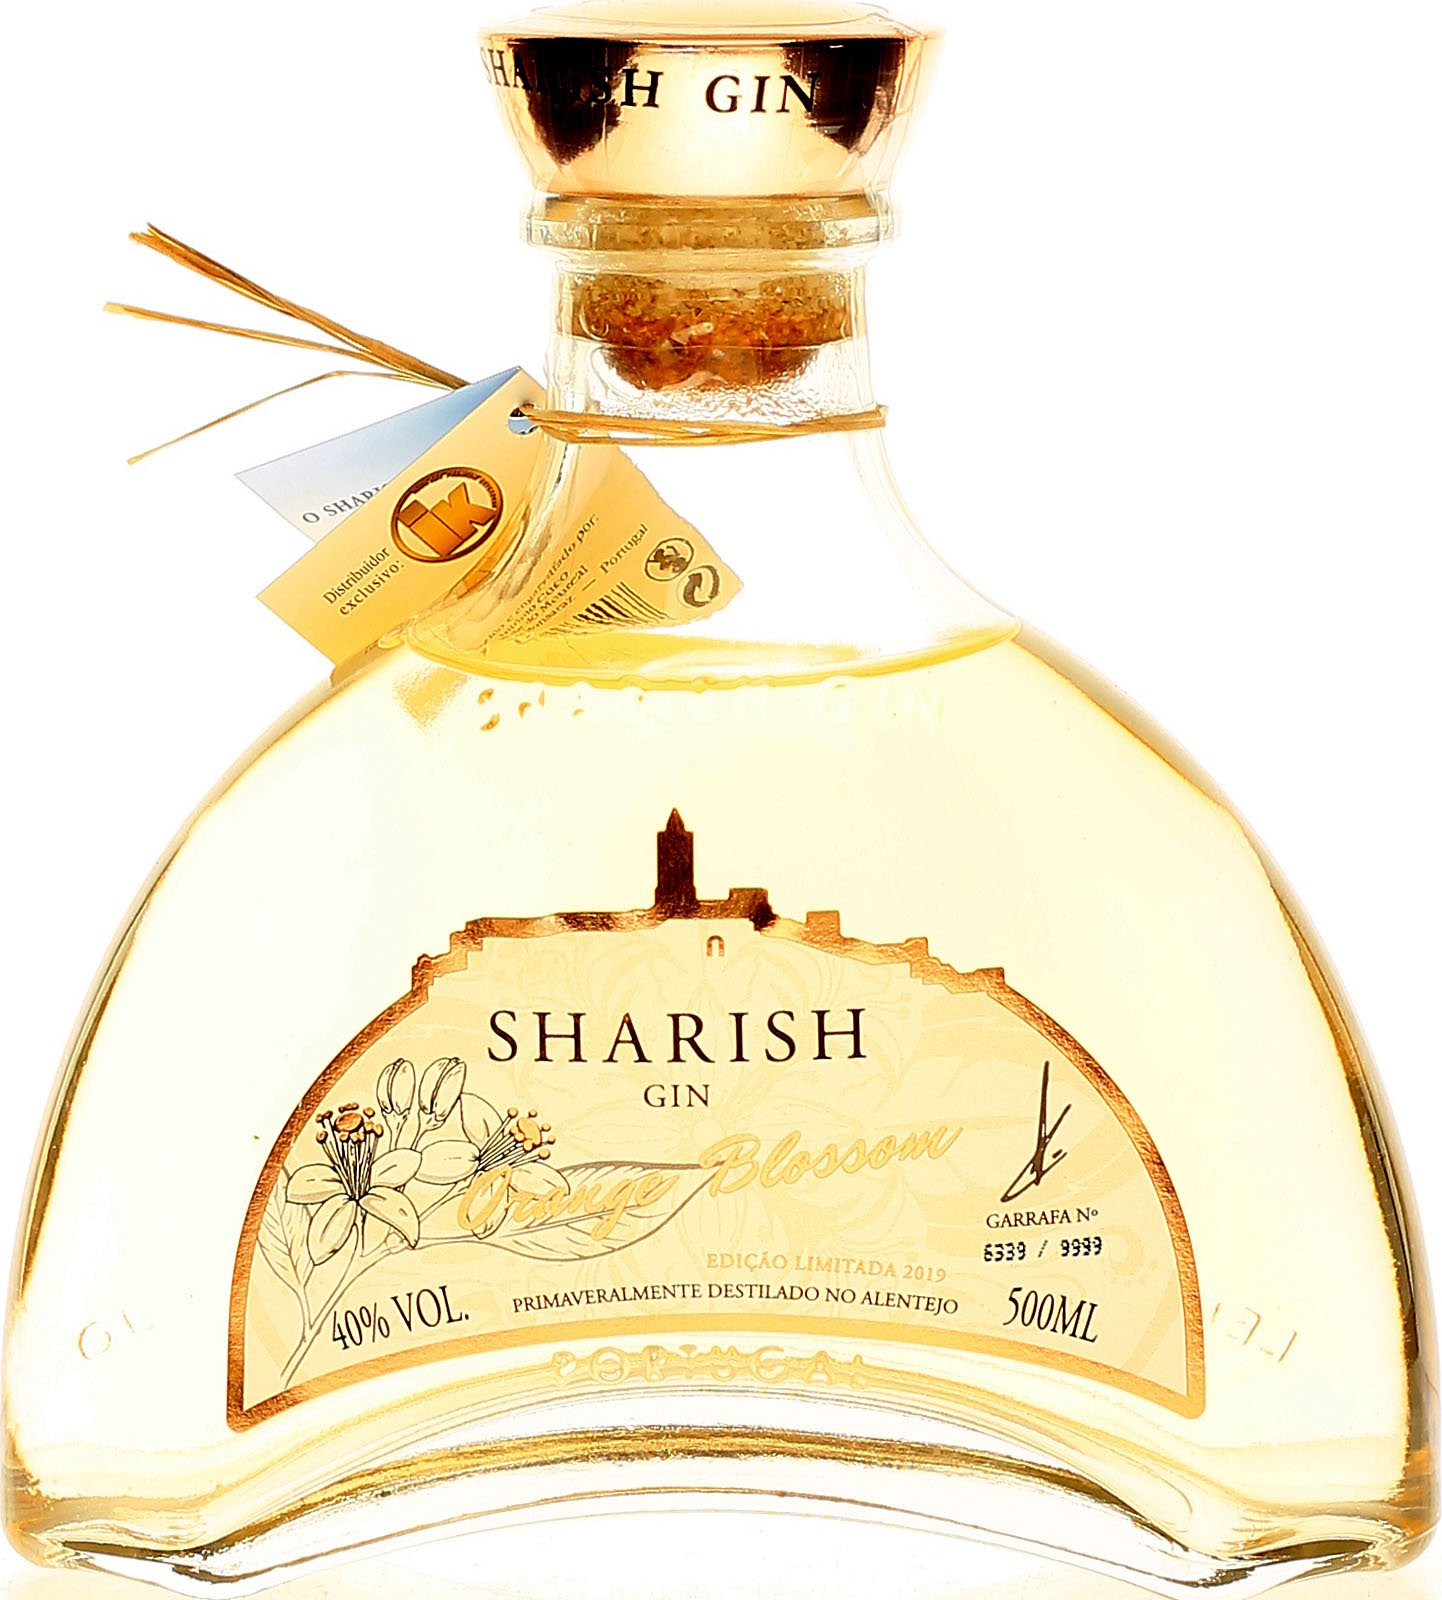 Liter bei Orange Gin Sharish 0,5 günstig Blossom ka uns